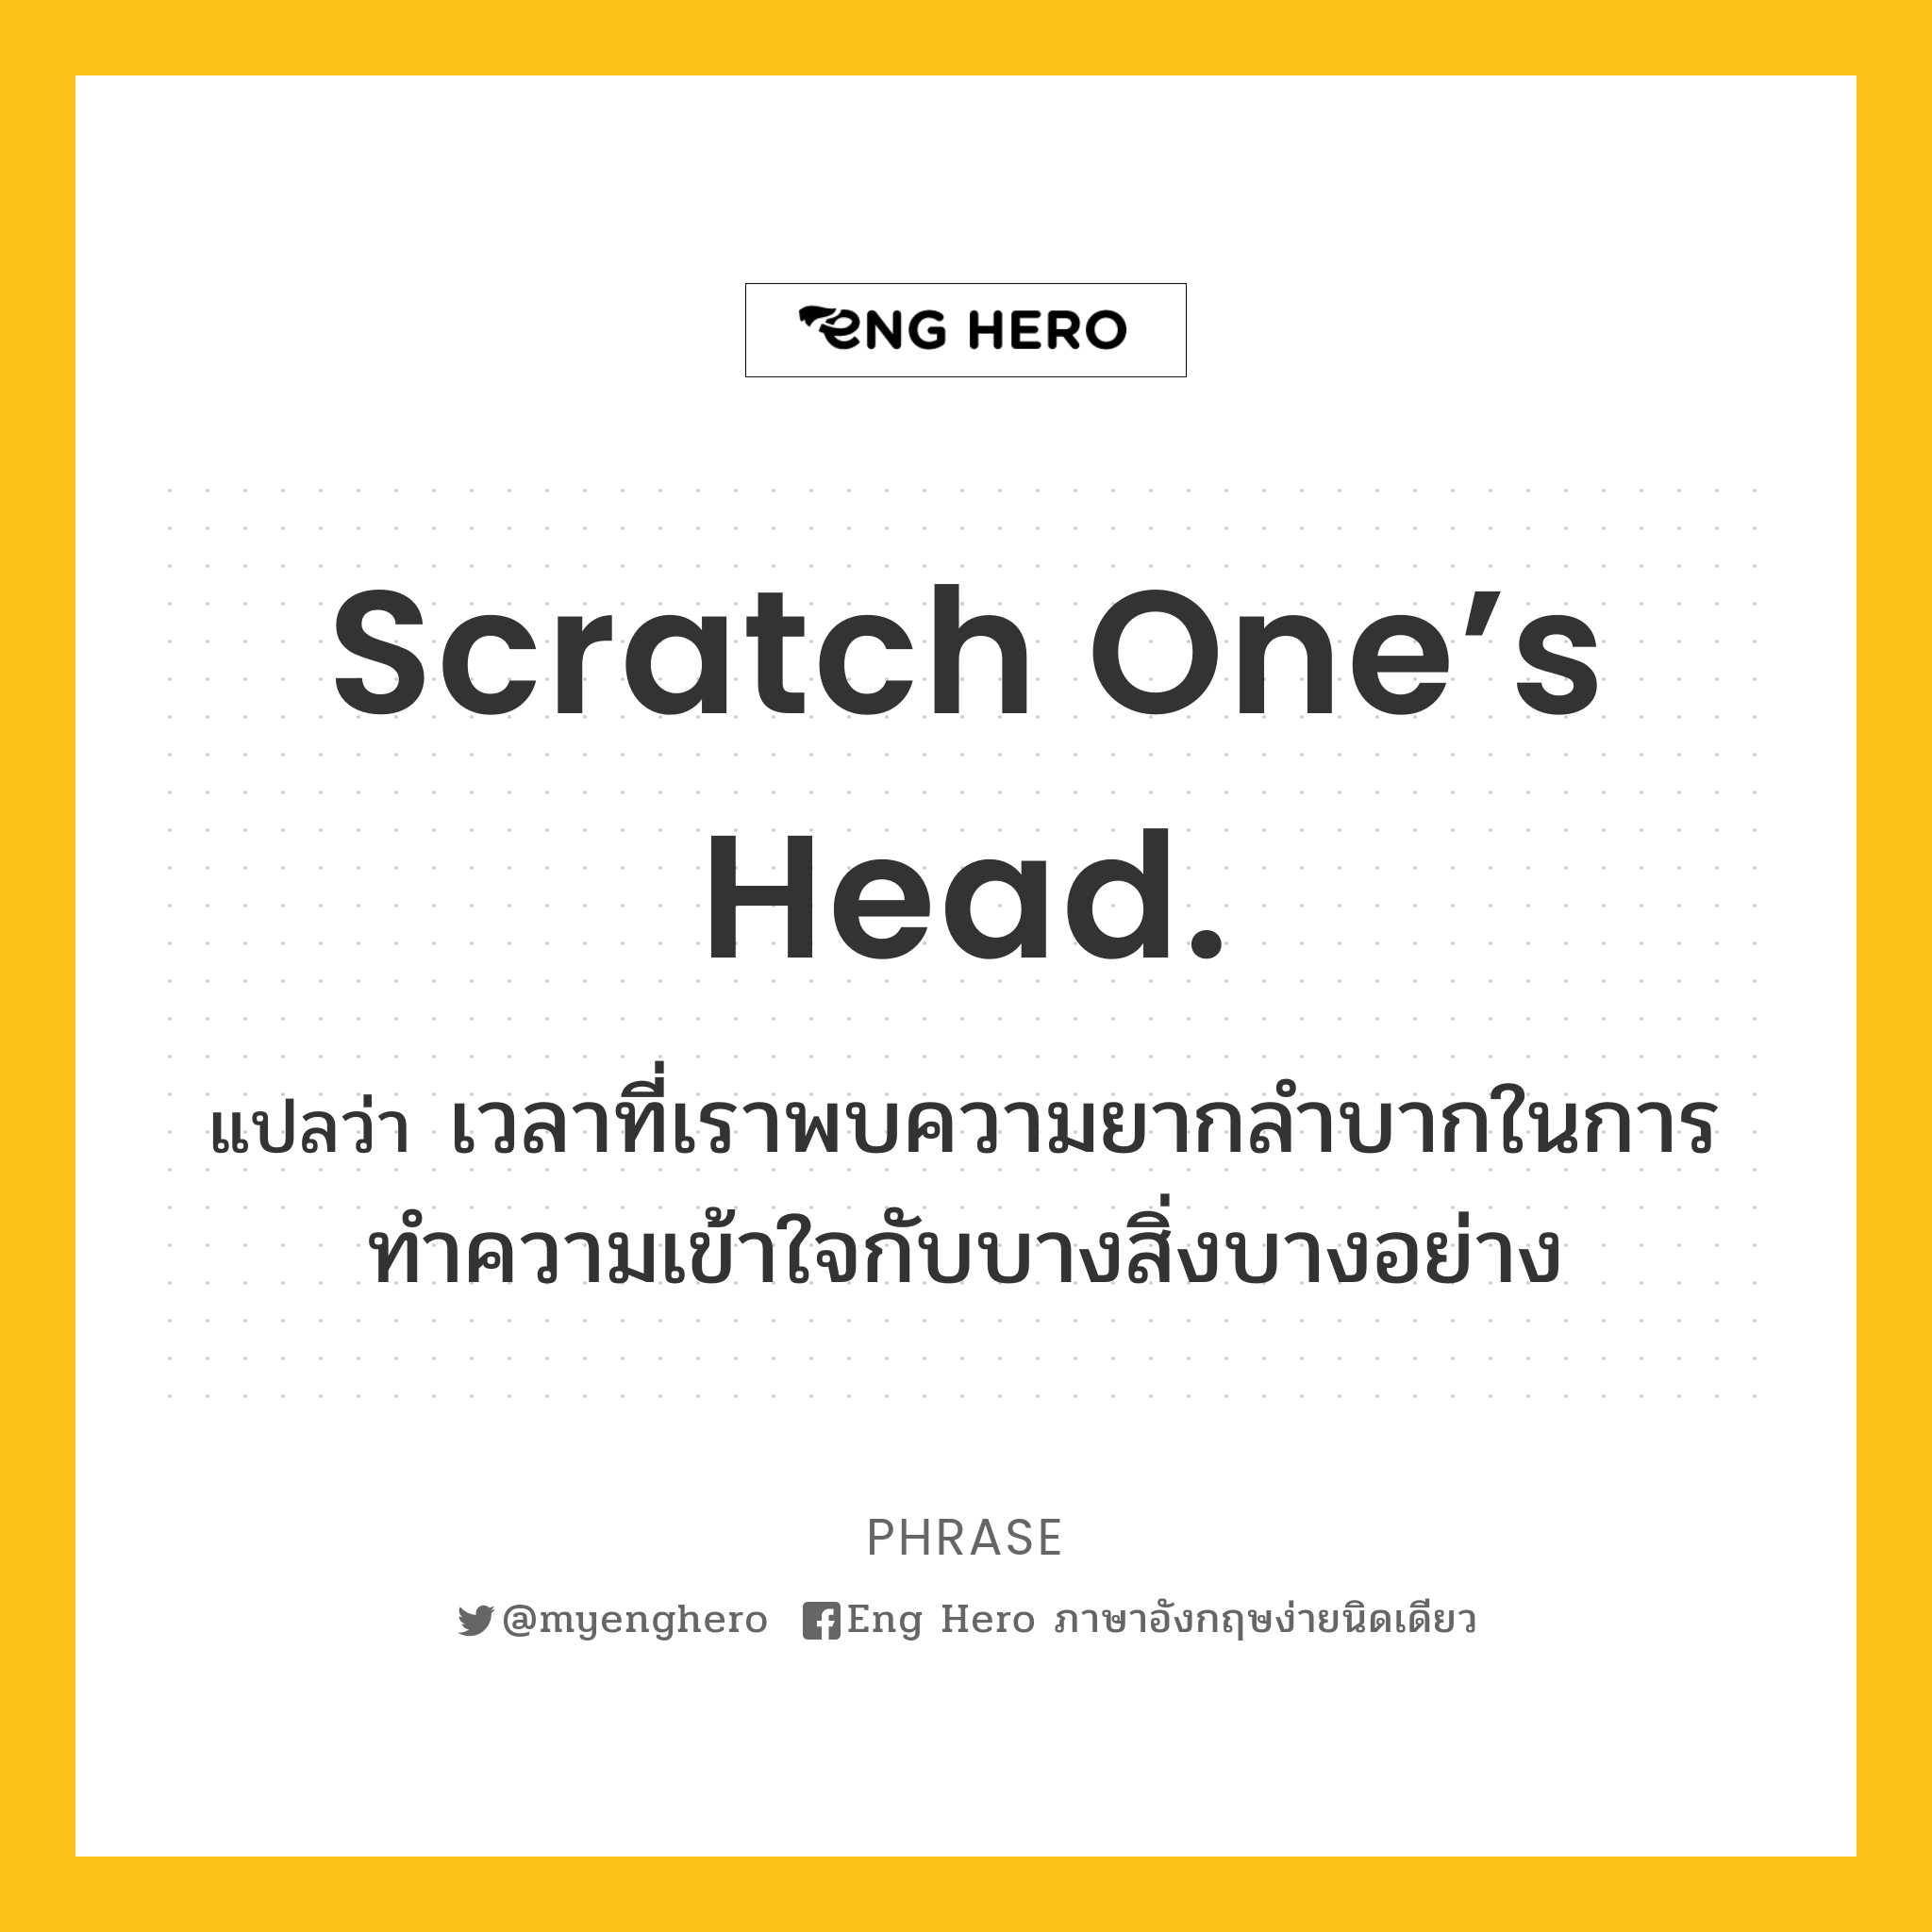 Scratch one’s head.